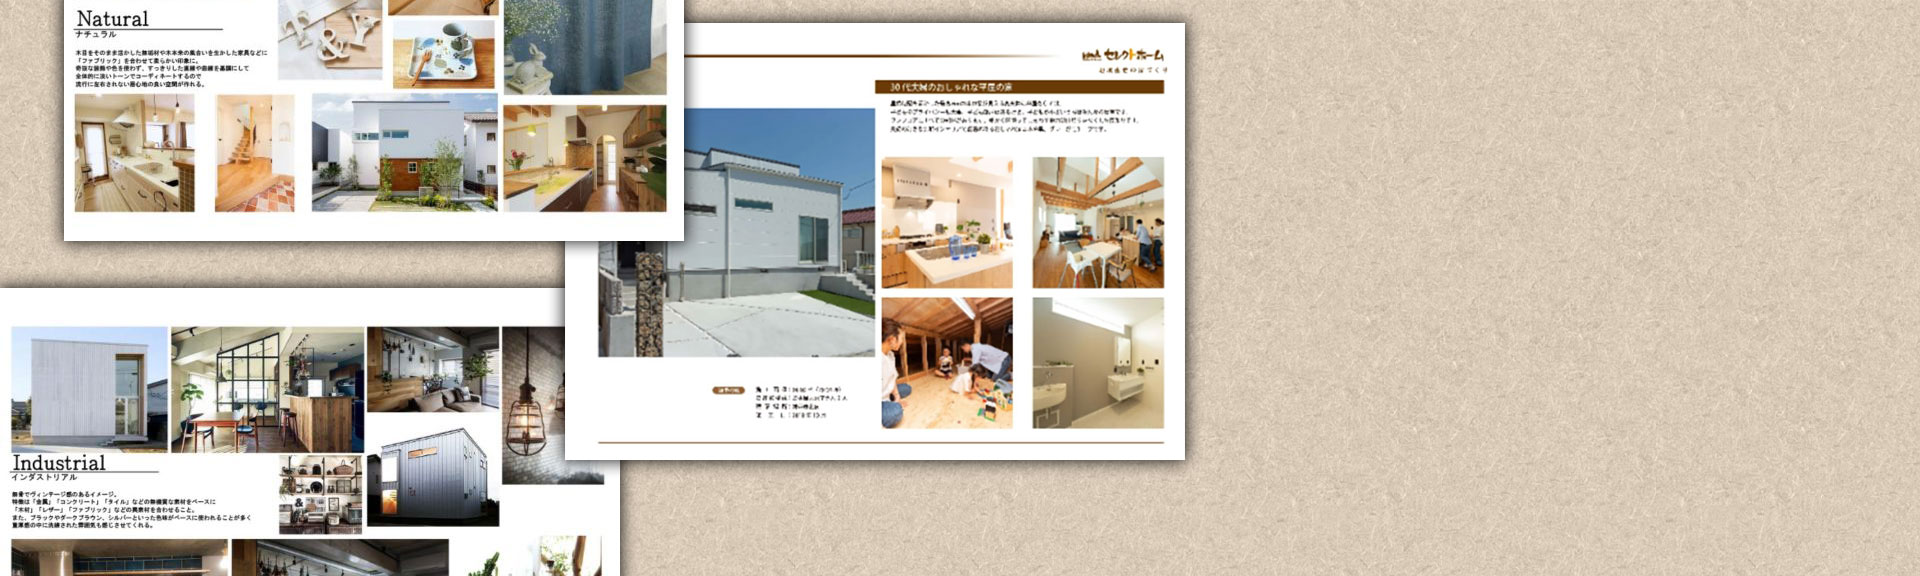 神戸市の工務店で木の家の注文住宅を建てるための資料請求